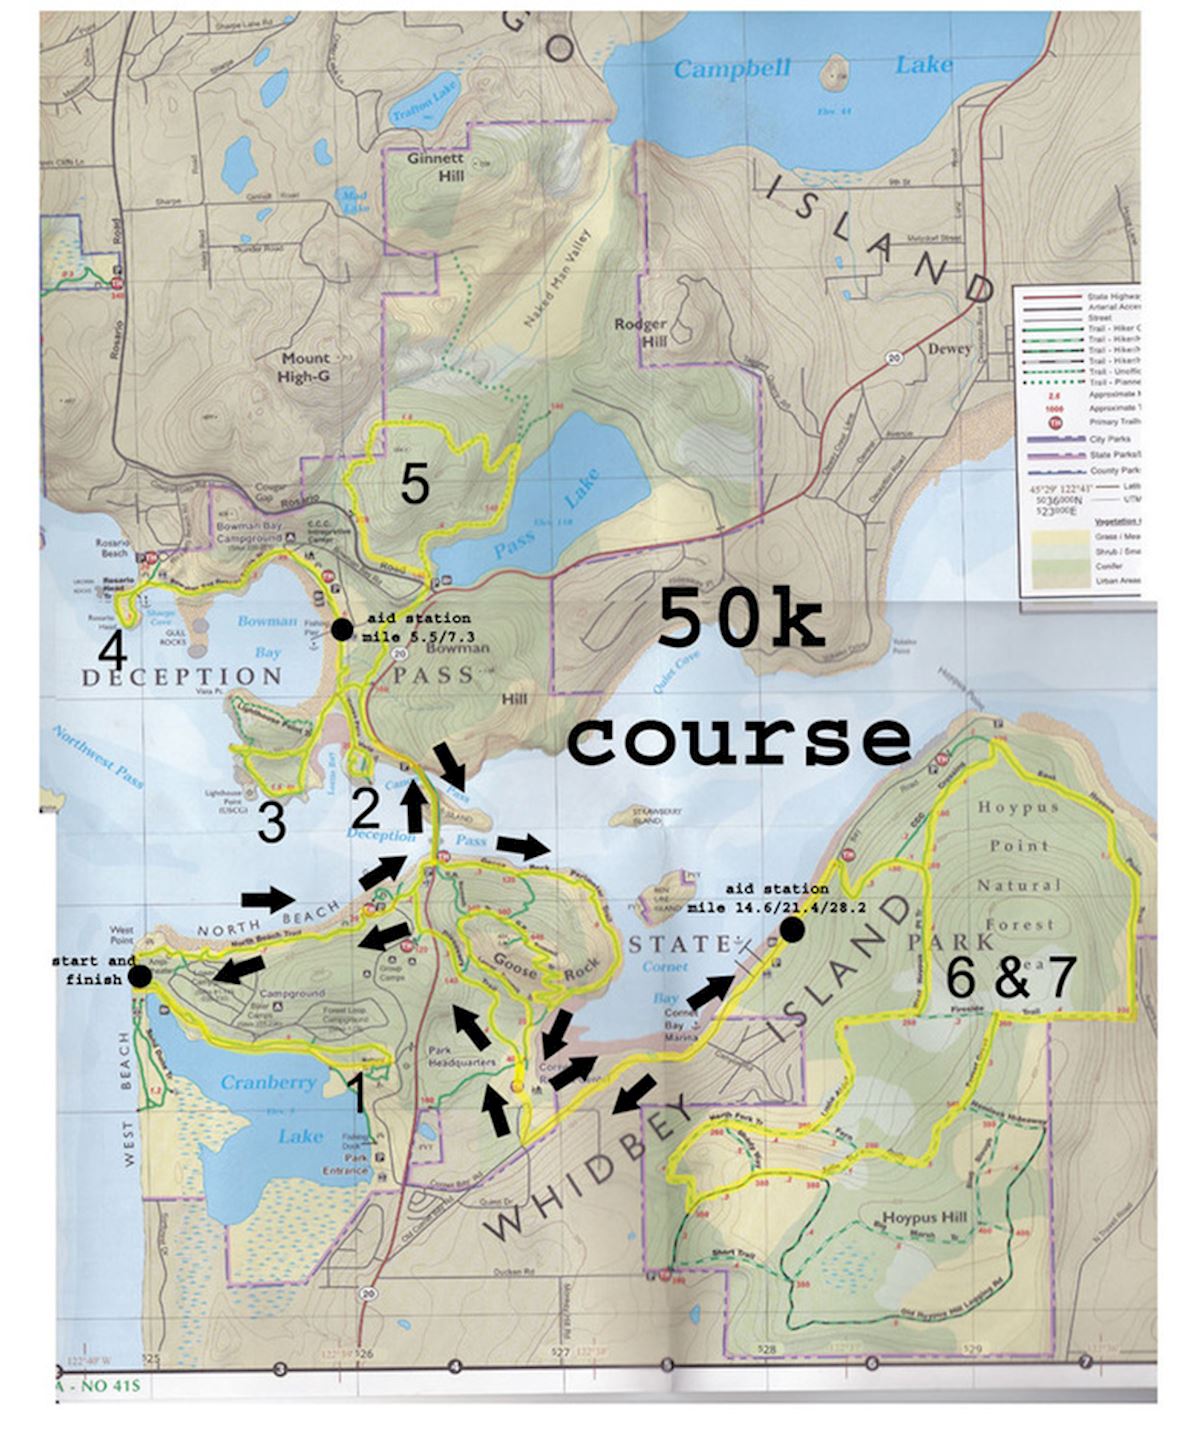 Deception Pass 50k Course Map 1190 